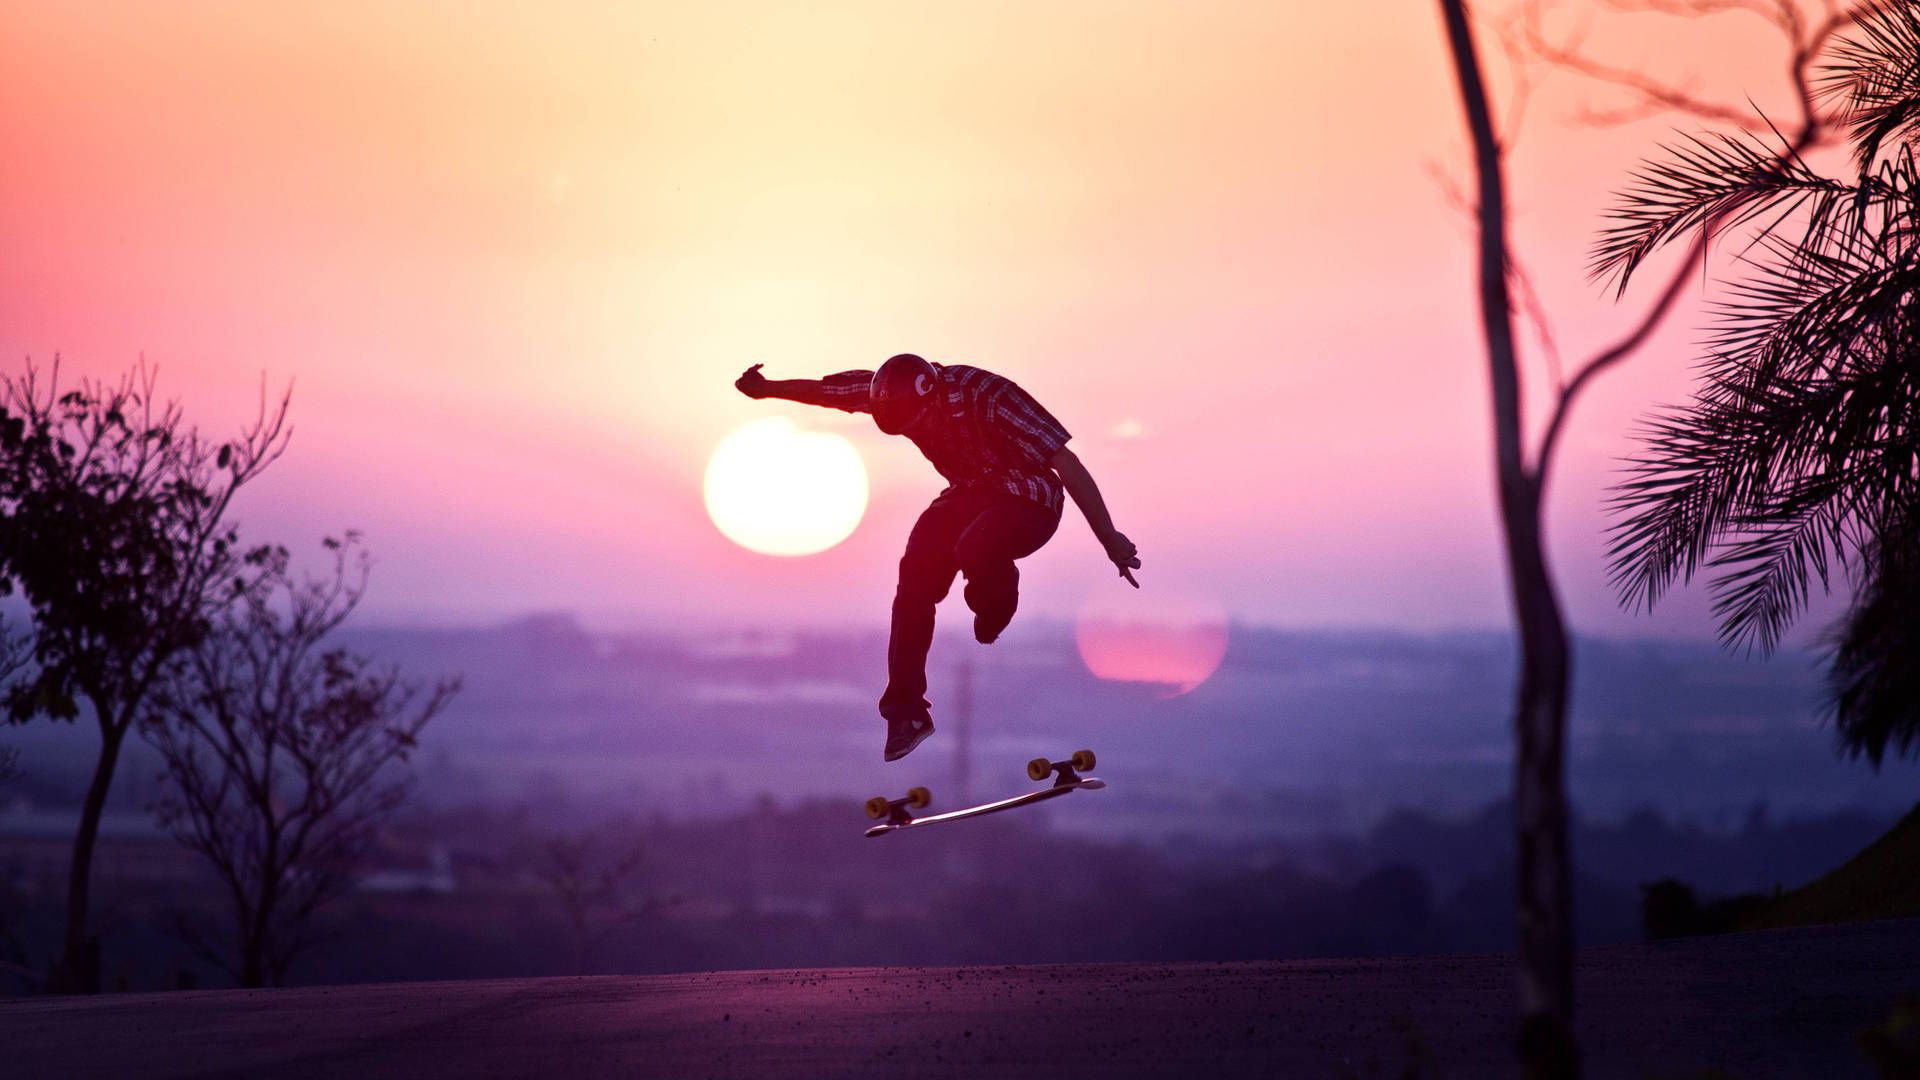 Aesthetic Skater Boy Silhouette Wallpaper